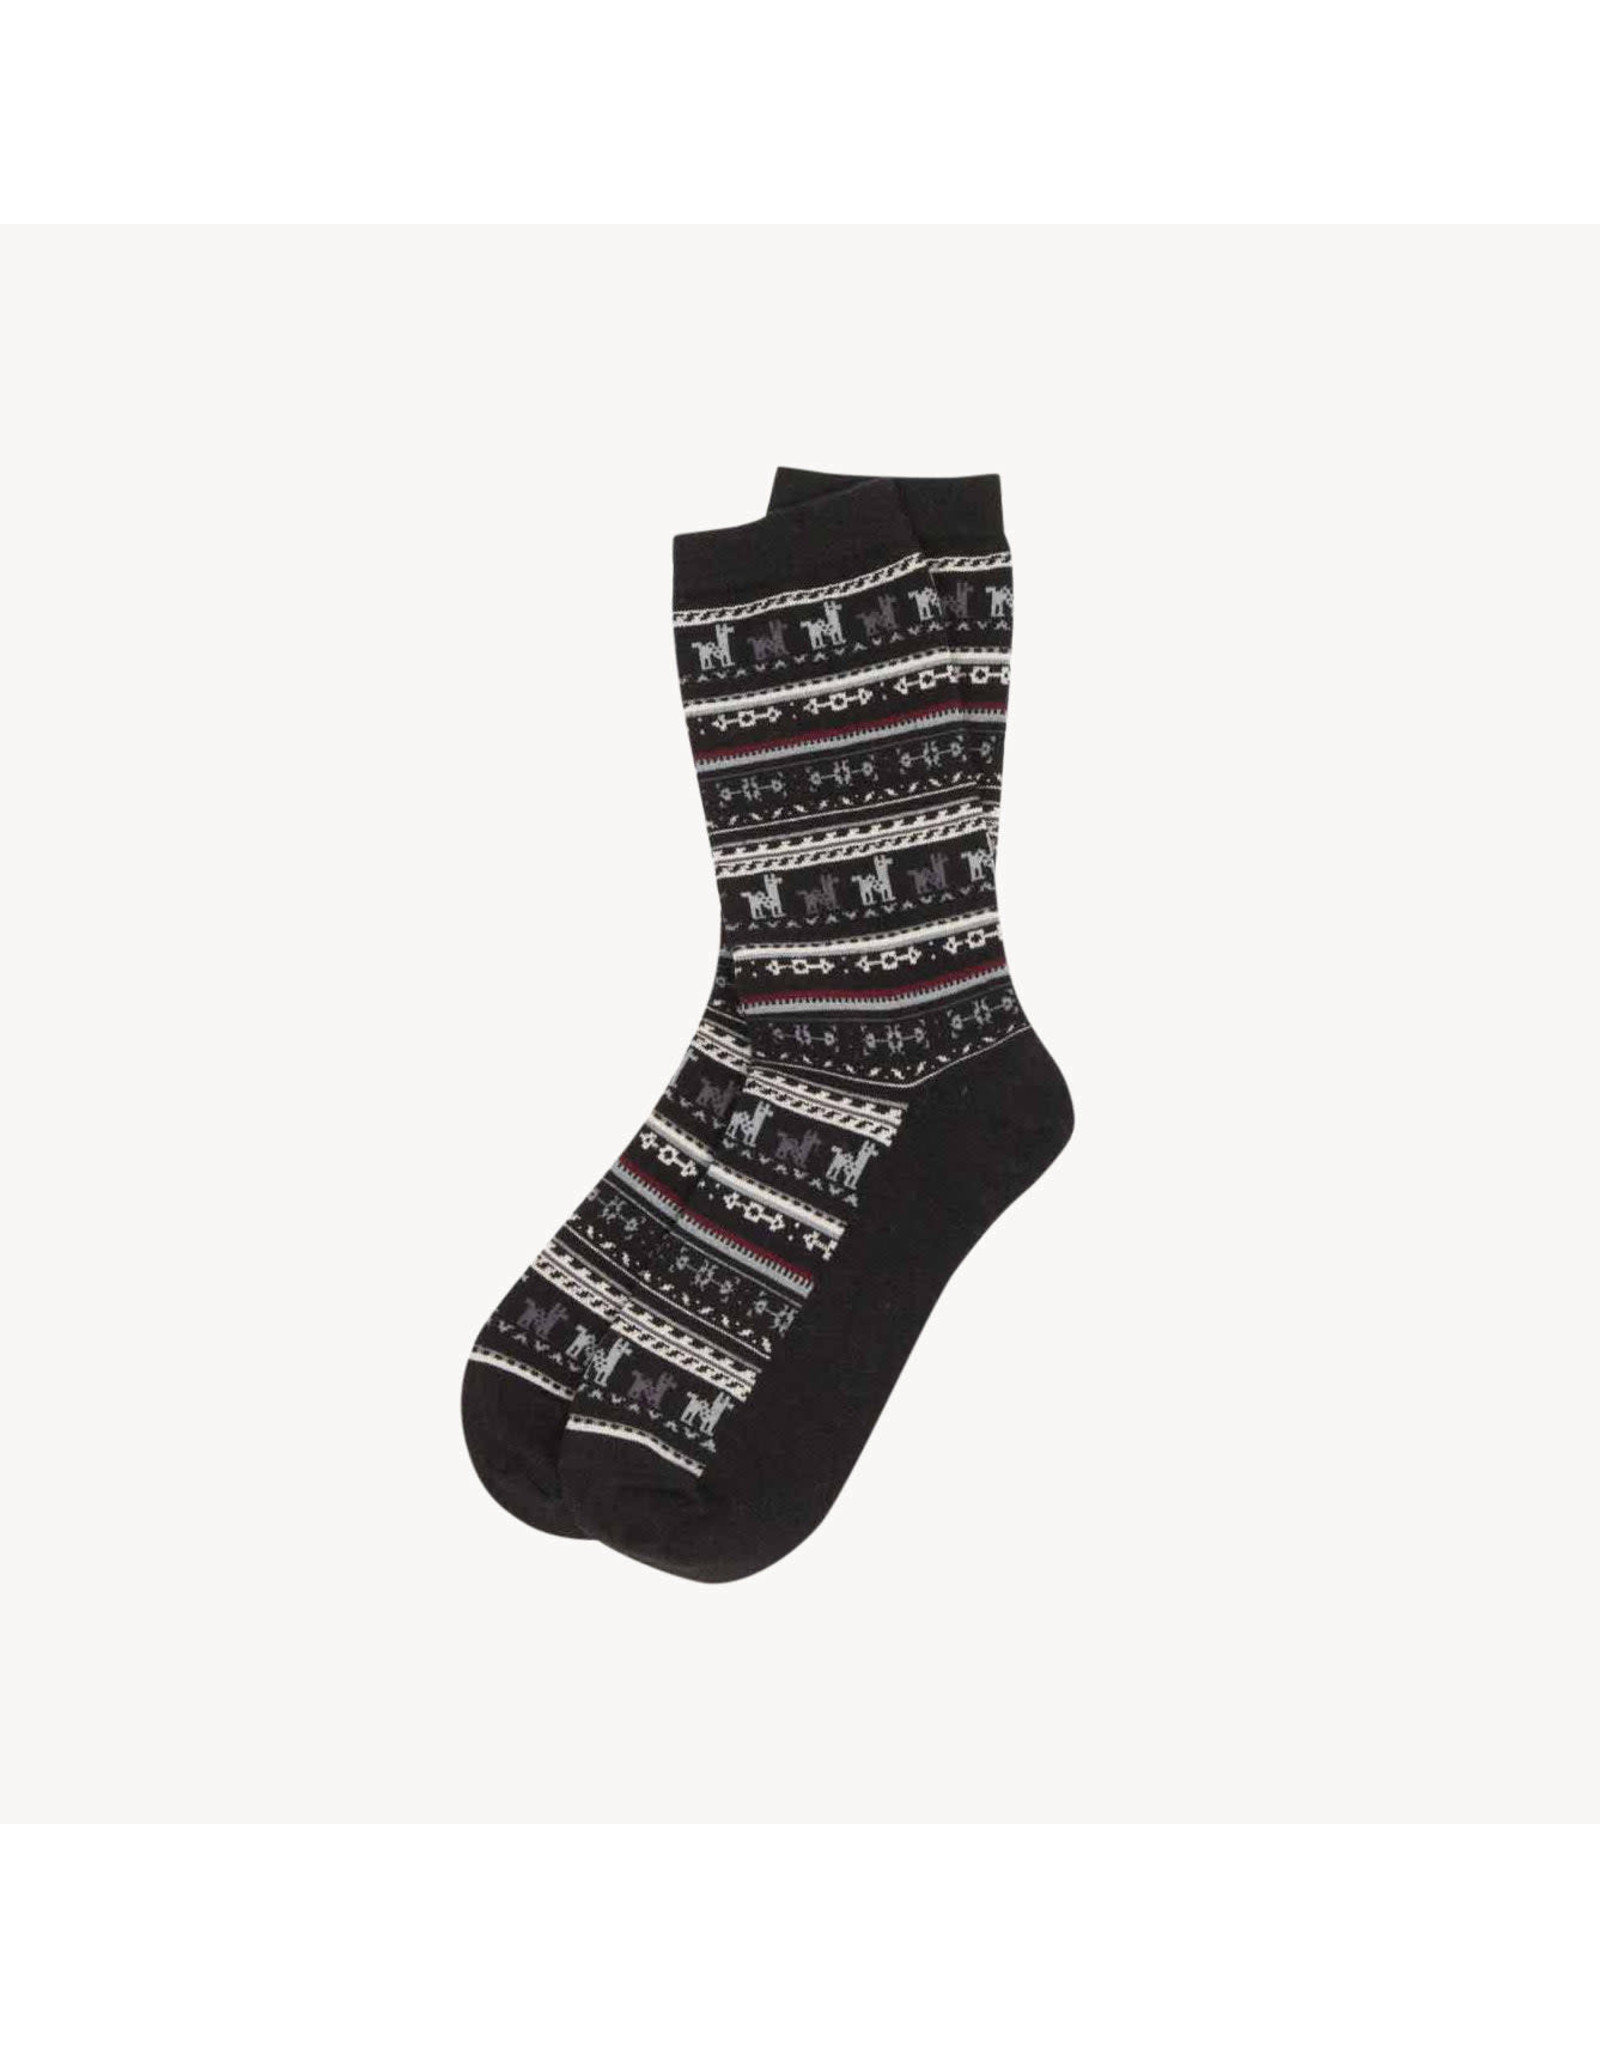 Pokoloko Alpaca Socks - Black - L/XL